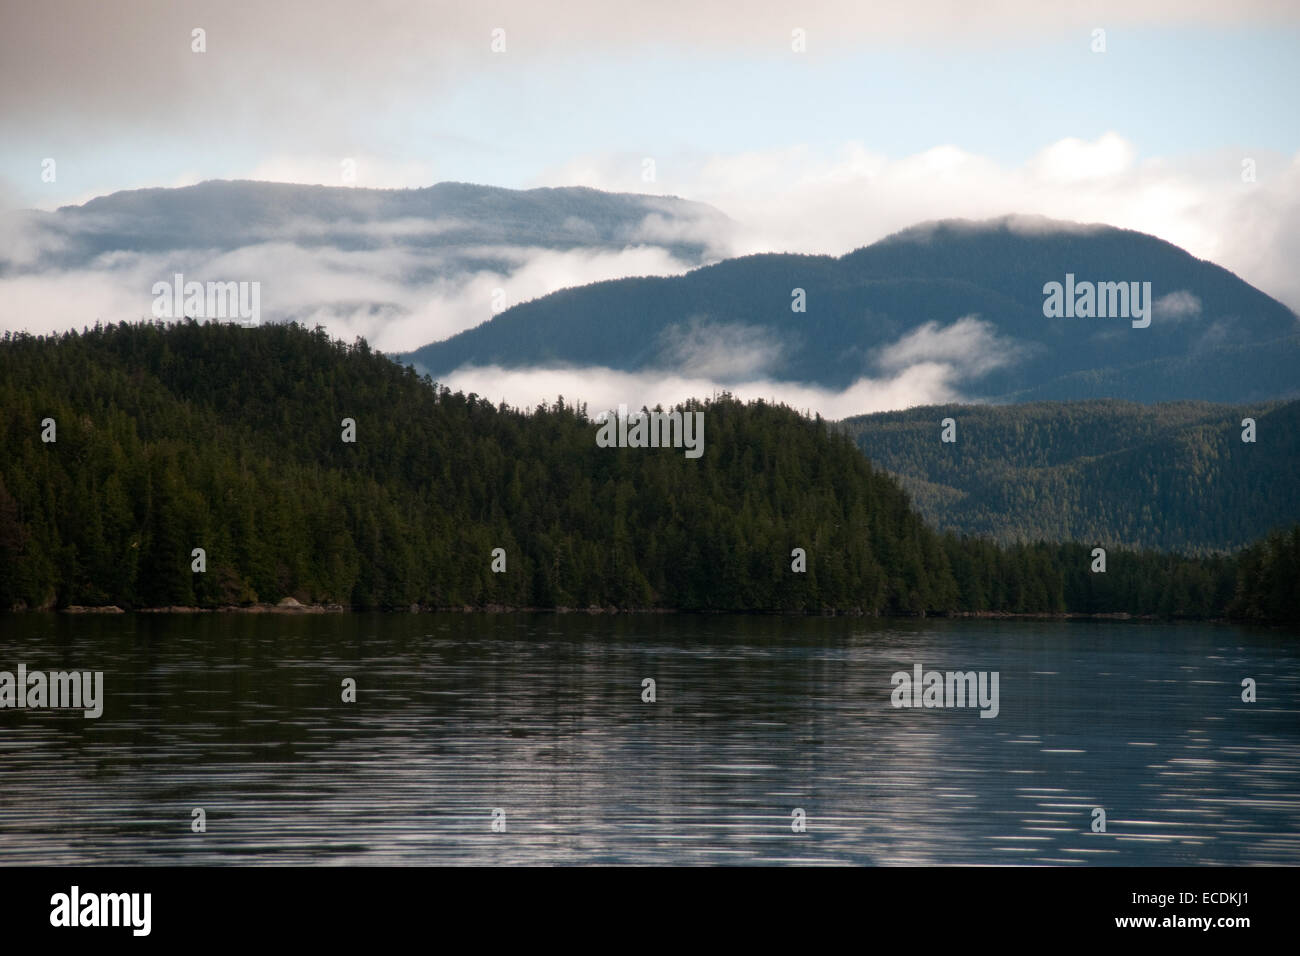 Die Berge der "Kanonenboot-Passage" in der Region der Great Bear Rainforest an der Küste von British Columbia, Kanada. Stockfoto